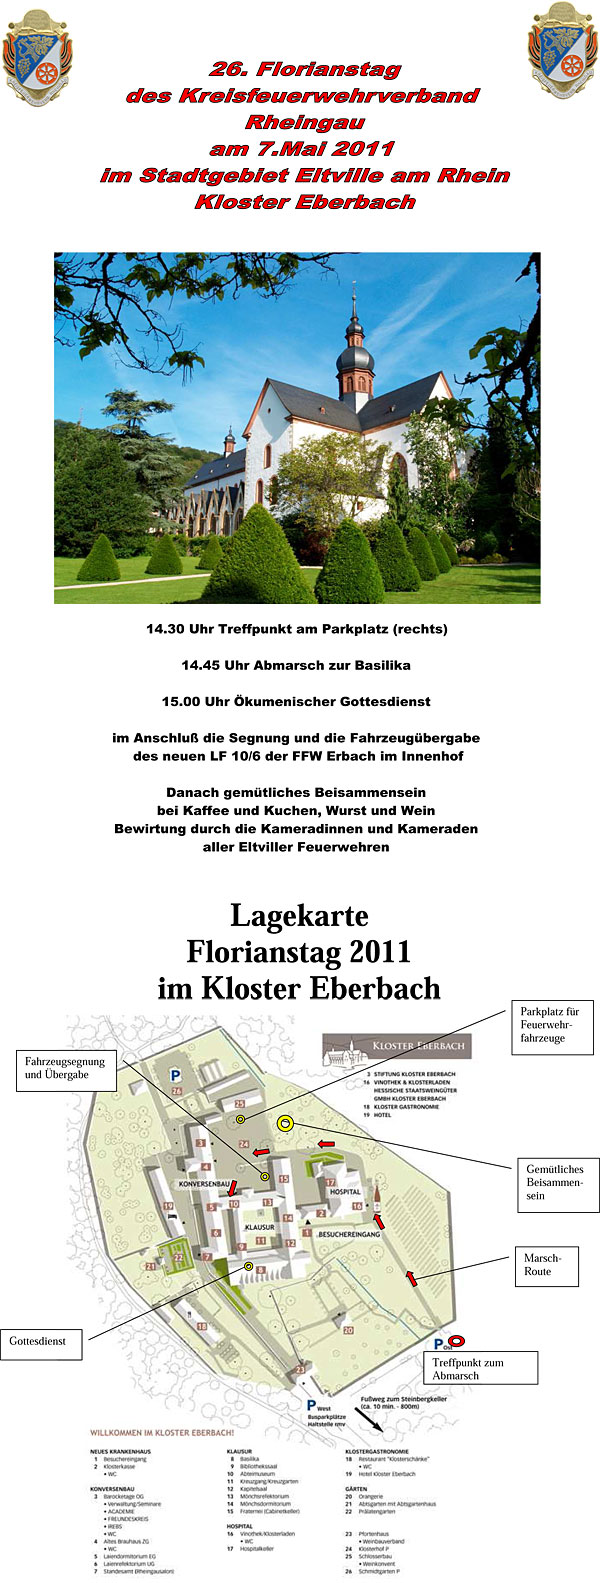 26. Florianstag des Kreisfeuerwehrverbandes Rheingau am 07.05.2011 im Kloster Eberbach